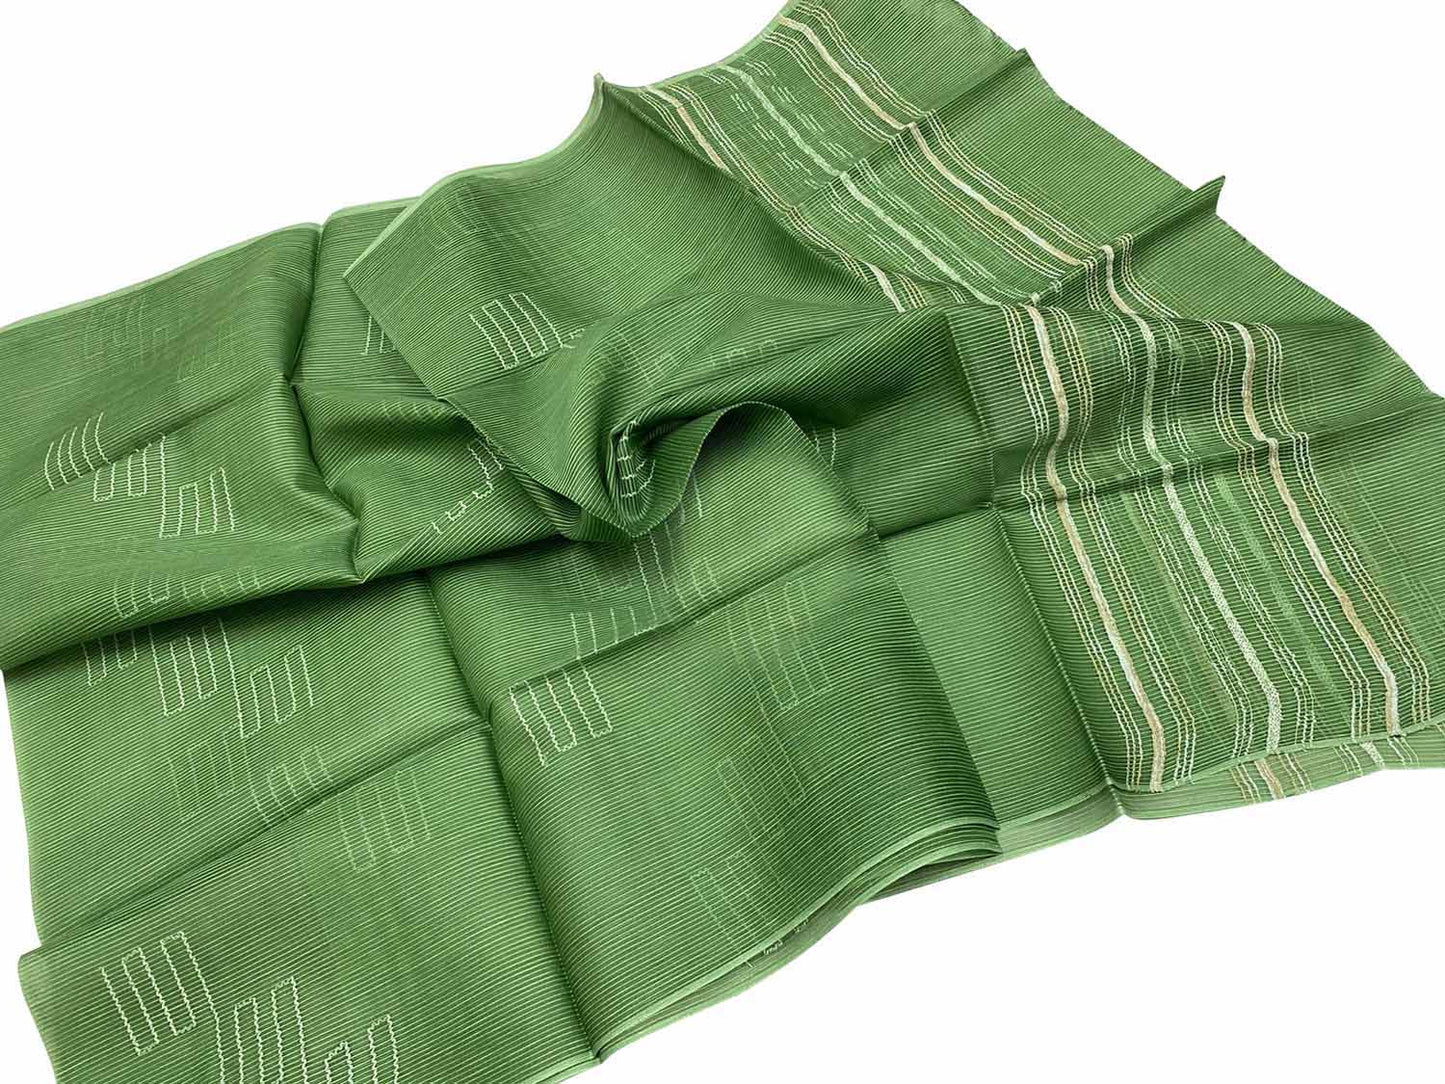 Get Stylish with Green Bhagalpur Pure Tussar Silk Dupatta - Shop Online Now! - Luxurion World